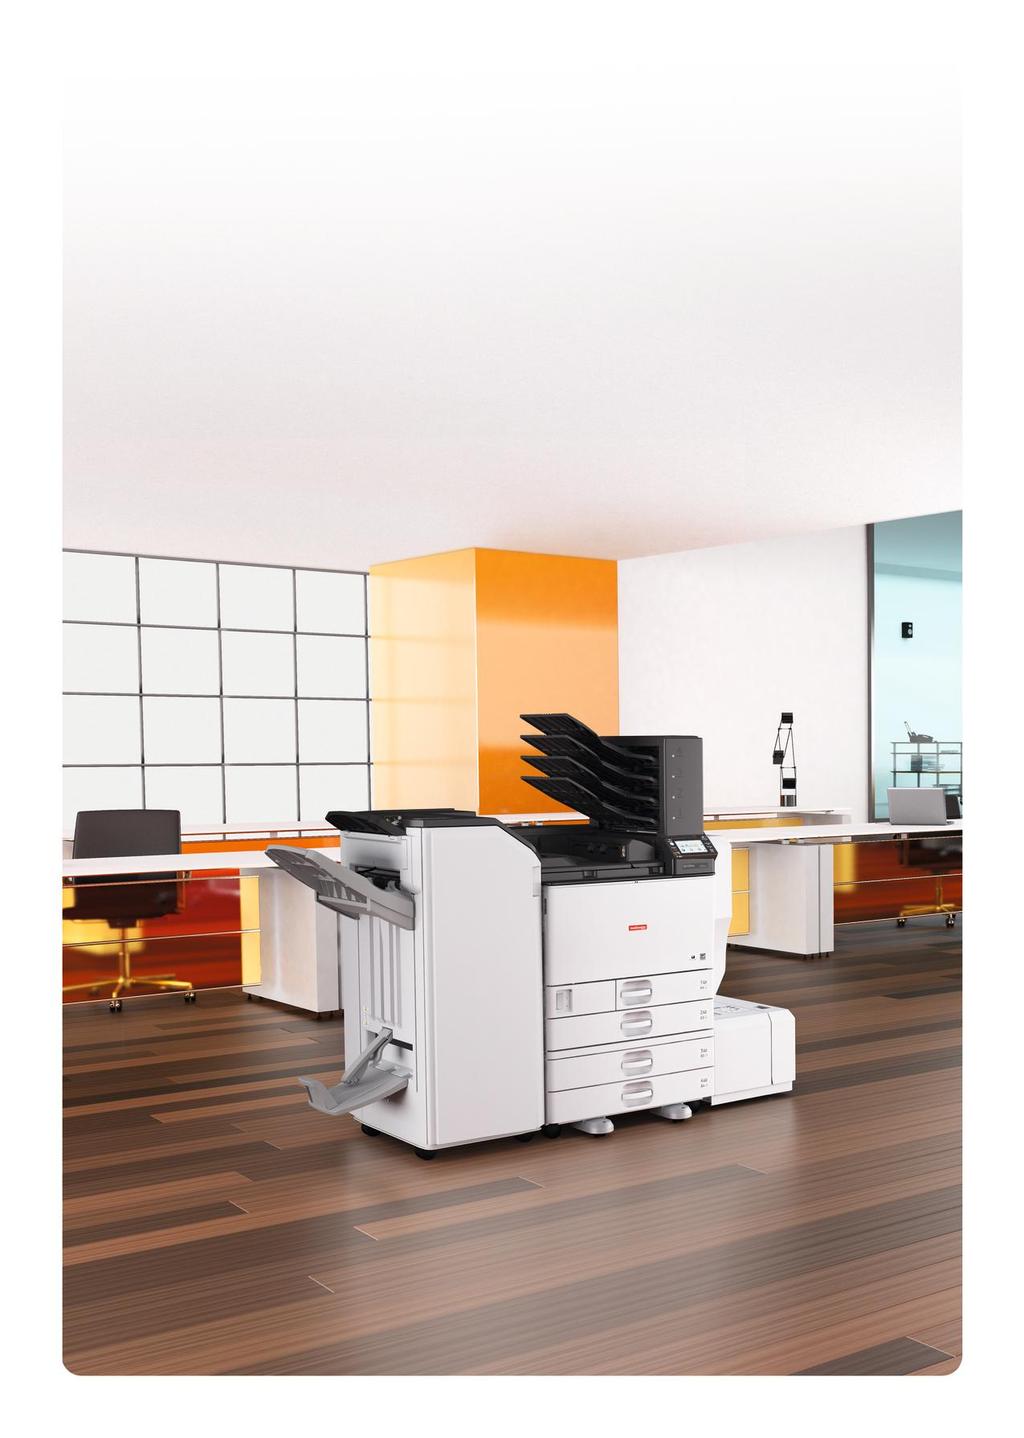 Stampanti laser a colori veloci ed efficienti SP C830DN/SP C831DN sono stampanti laser A3 a colori veloci ed intuitive, adatte all'uso in ufficio, in grado di gestire grammature carta fino a 300 g/m².